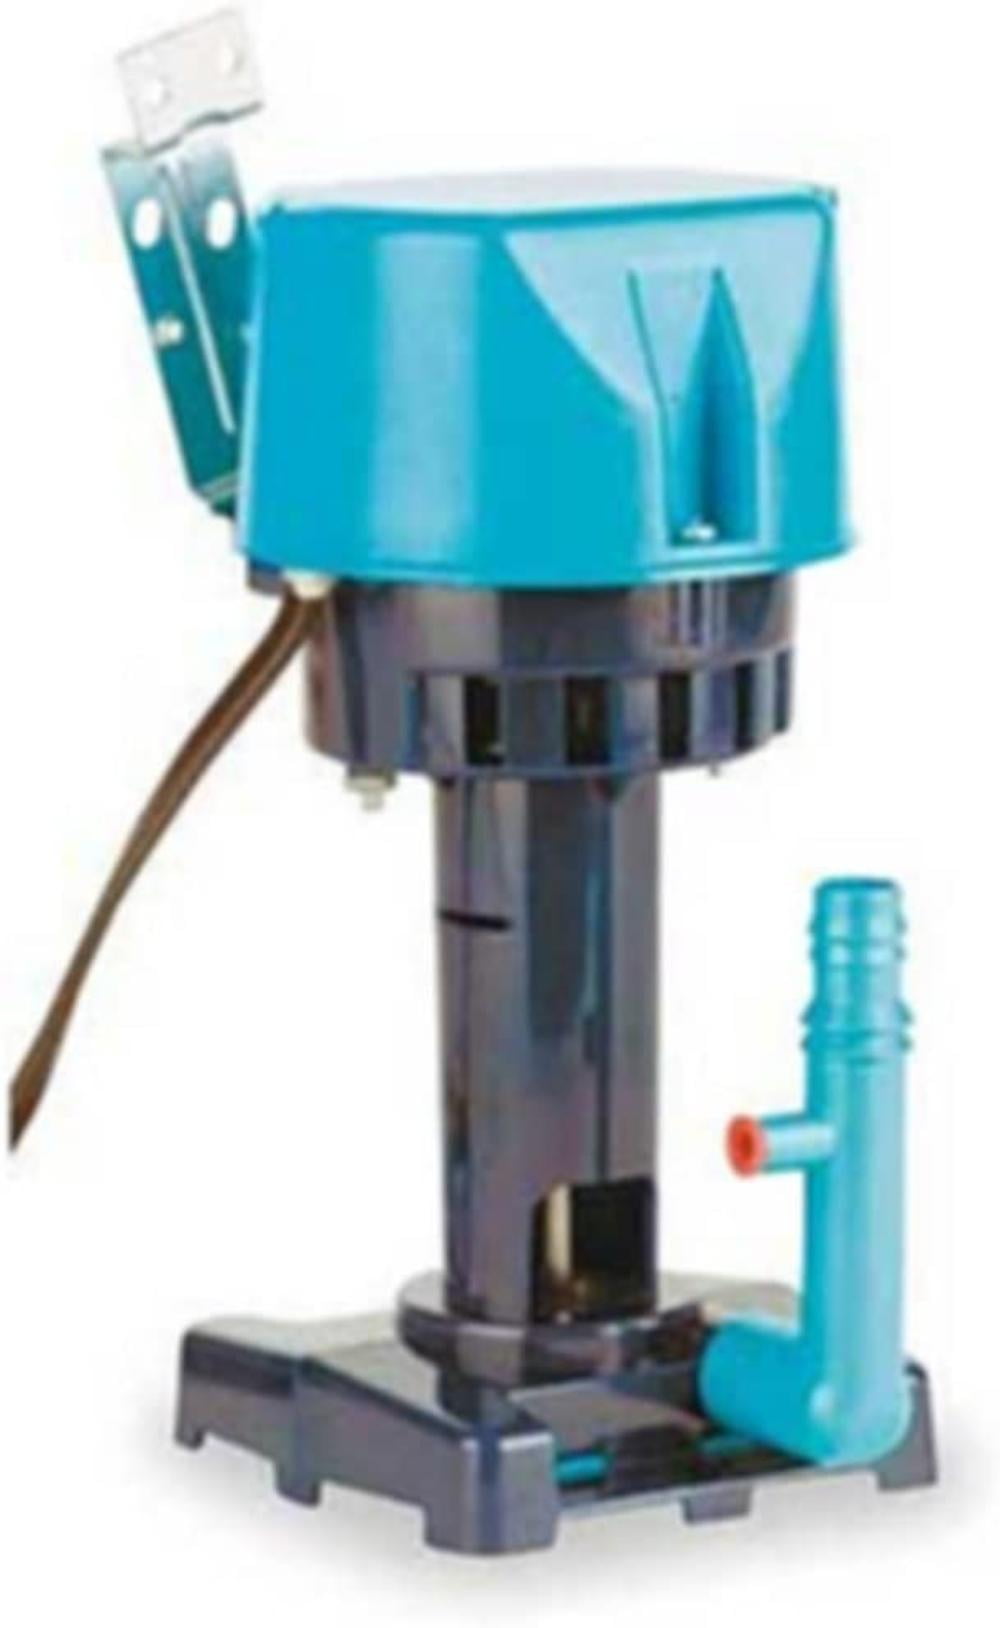 Little Giant Cp1-115 Evaporative Cooler Pump 115 Volt 540005 for sale online 